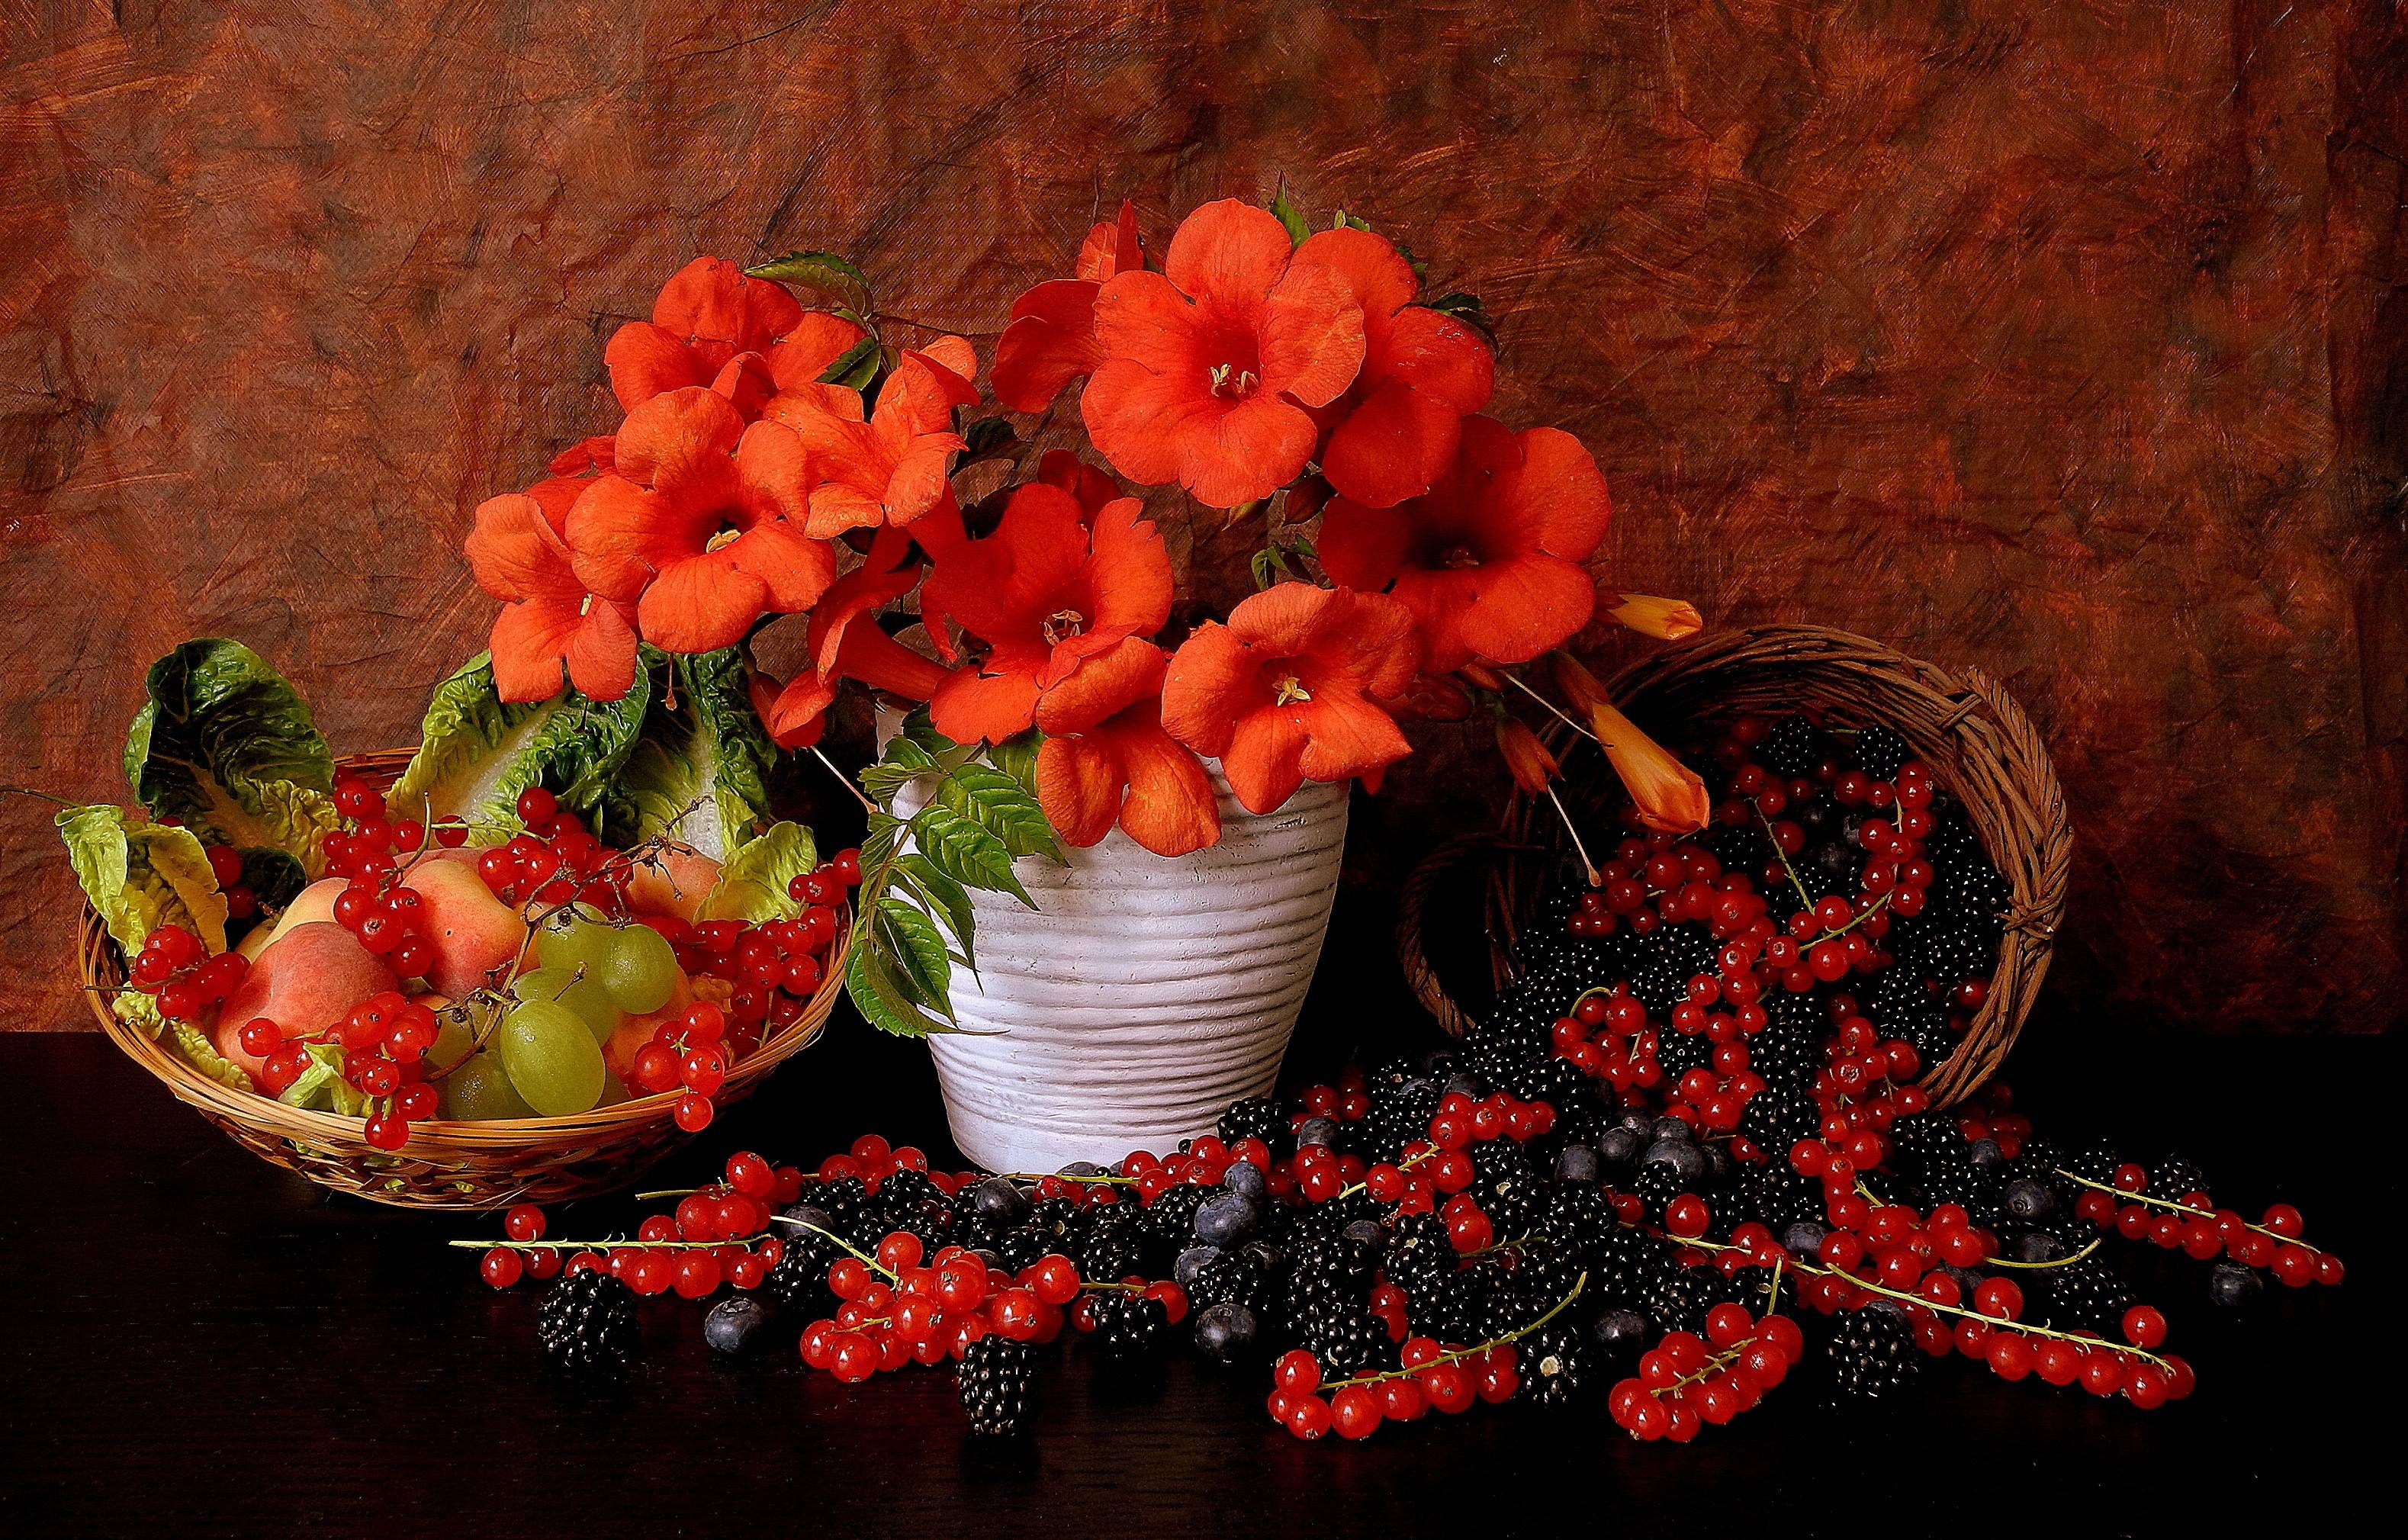 Обои цветы ягоды натюрморт на рабочий стол